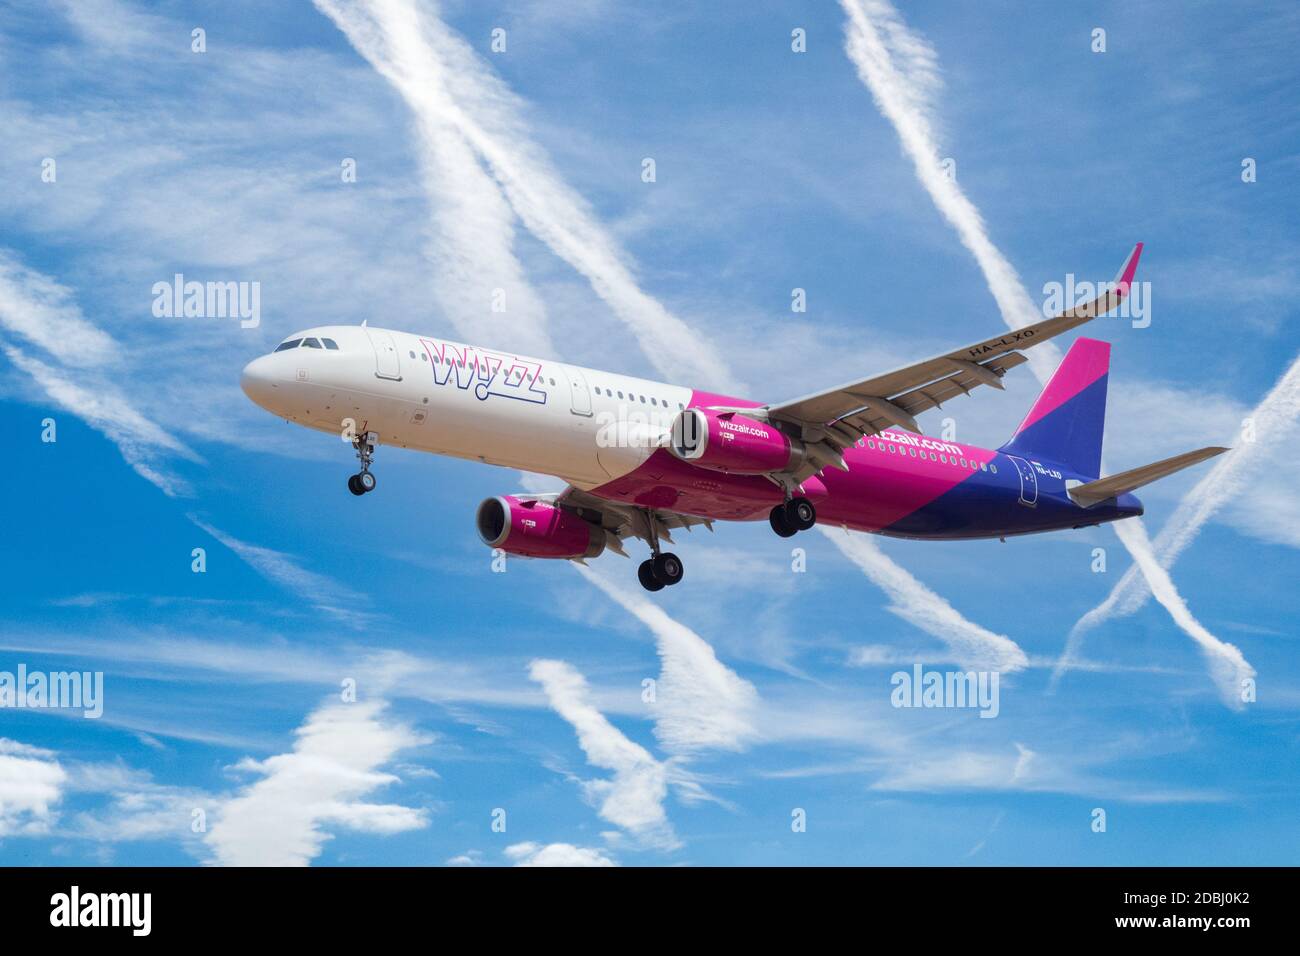 Wizz Air Airbus A321-231 avec train d'atterrissage vers le bas se préparant à atterrir à l'aéroport avec l'avion contrent dans le ciel bleu. Banque D'Images